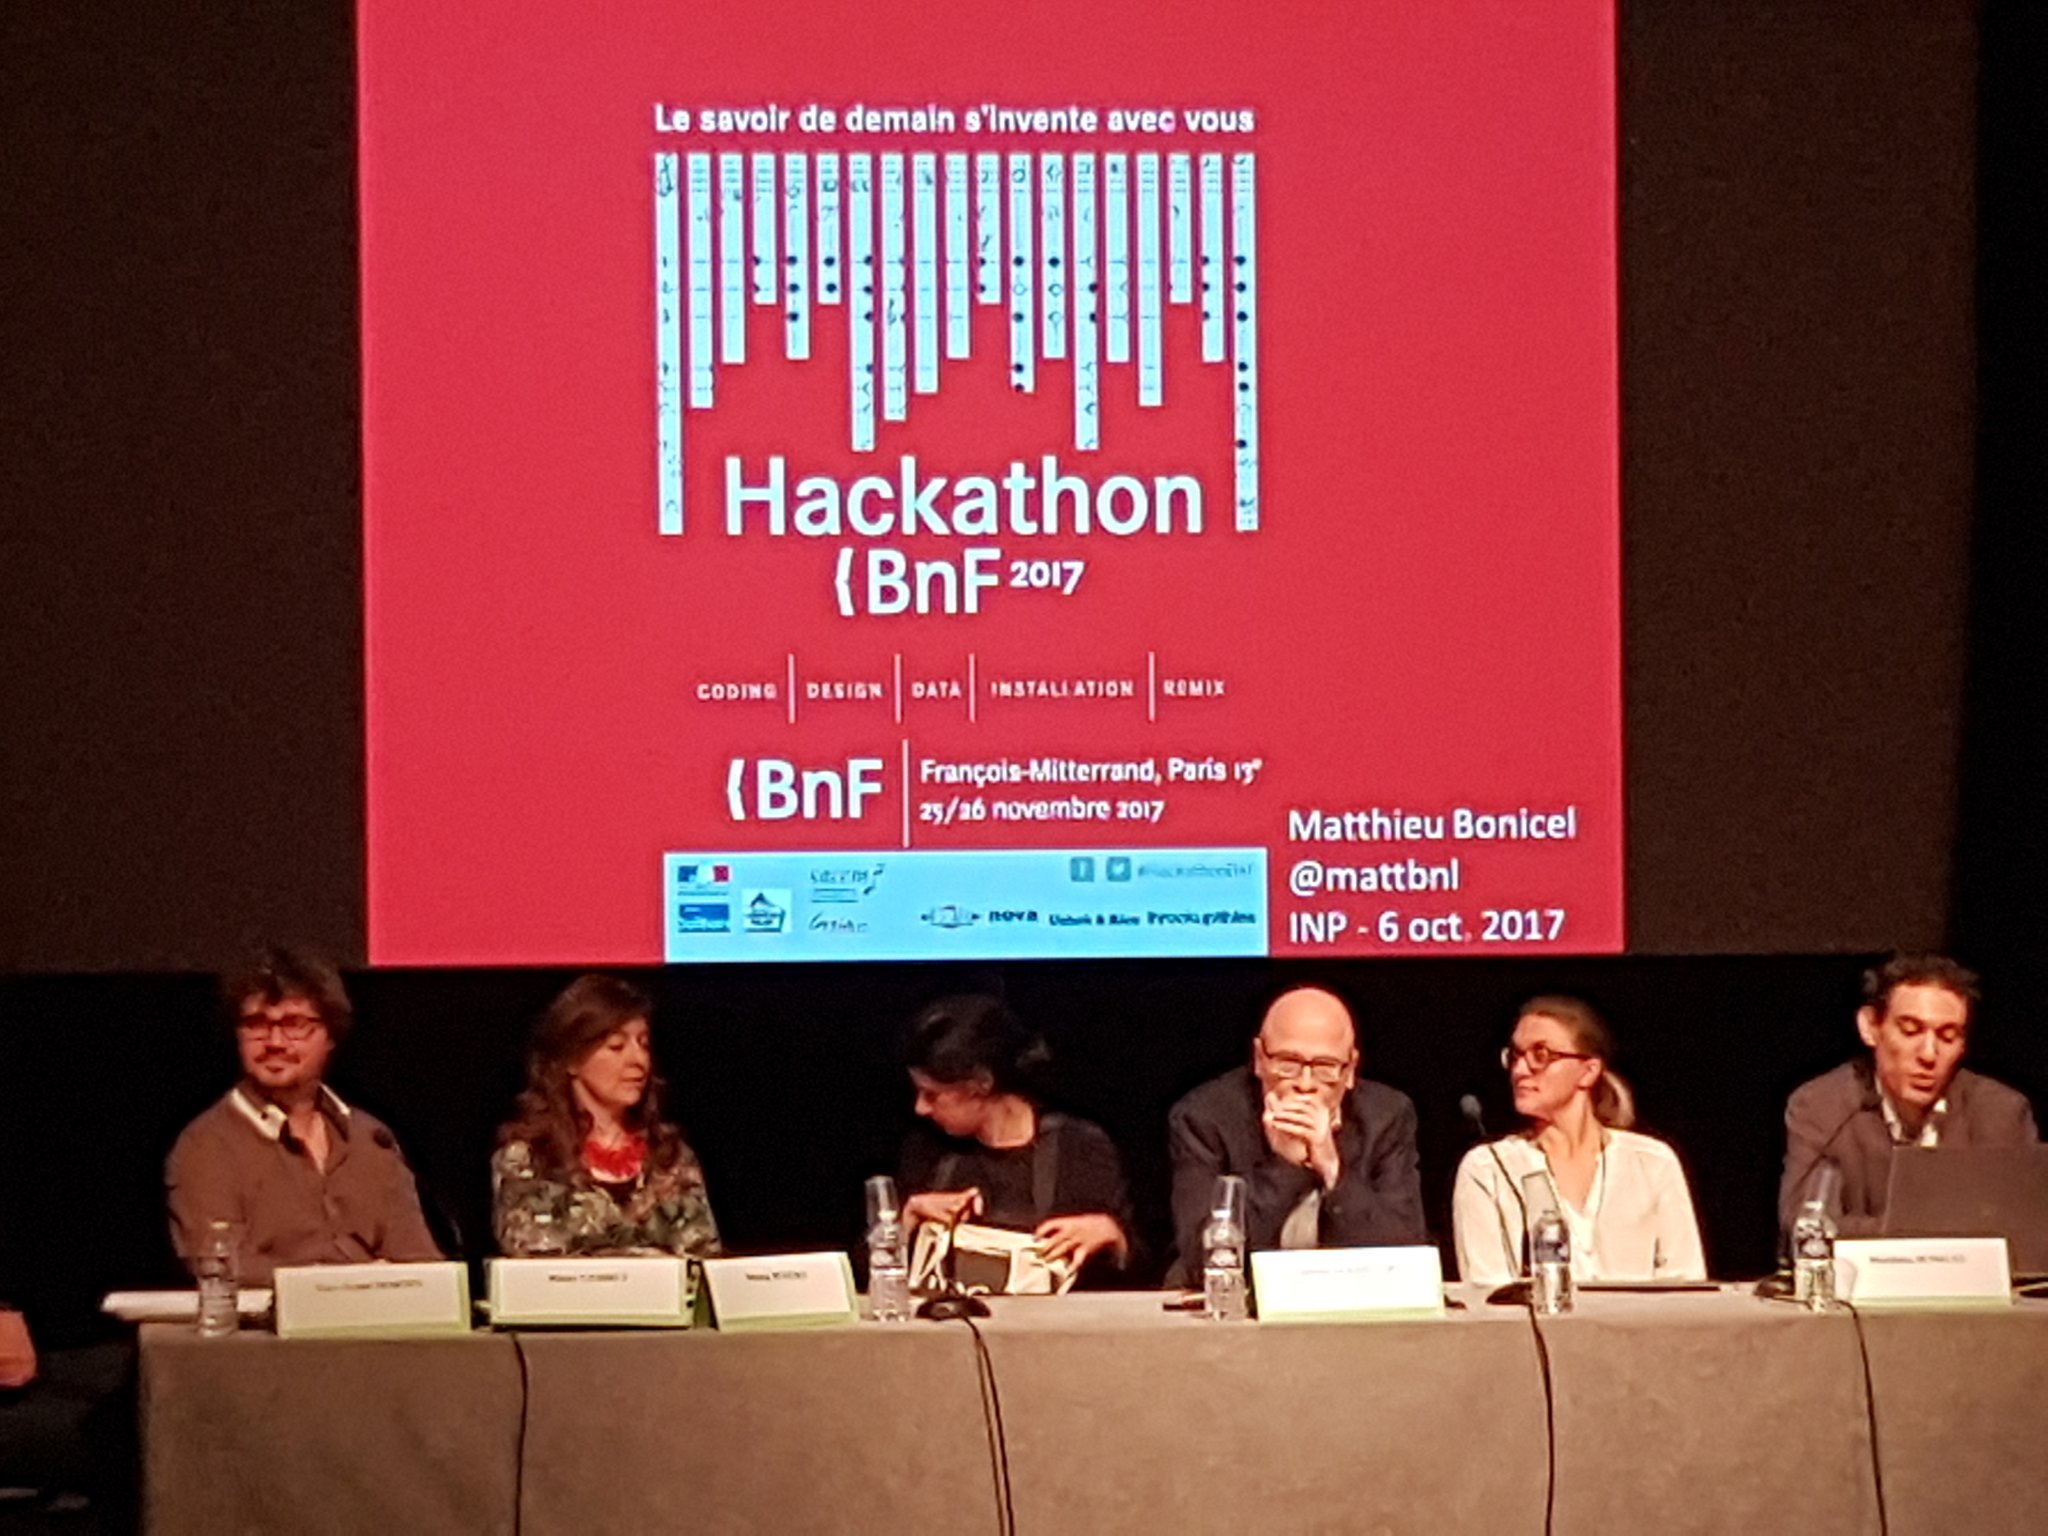 Le #HackathonBnF 2017 sera sur le thème de la musique, avec des activités culturelles et artistiques en parallèle #ParticiperParticipez https://t.co/QGaUbv1gI8